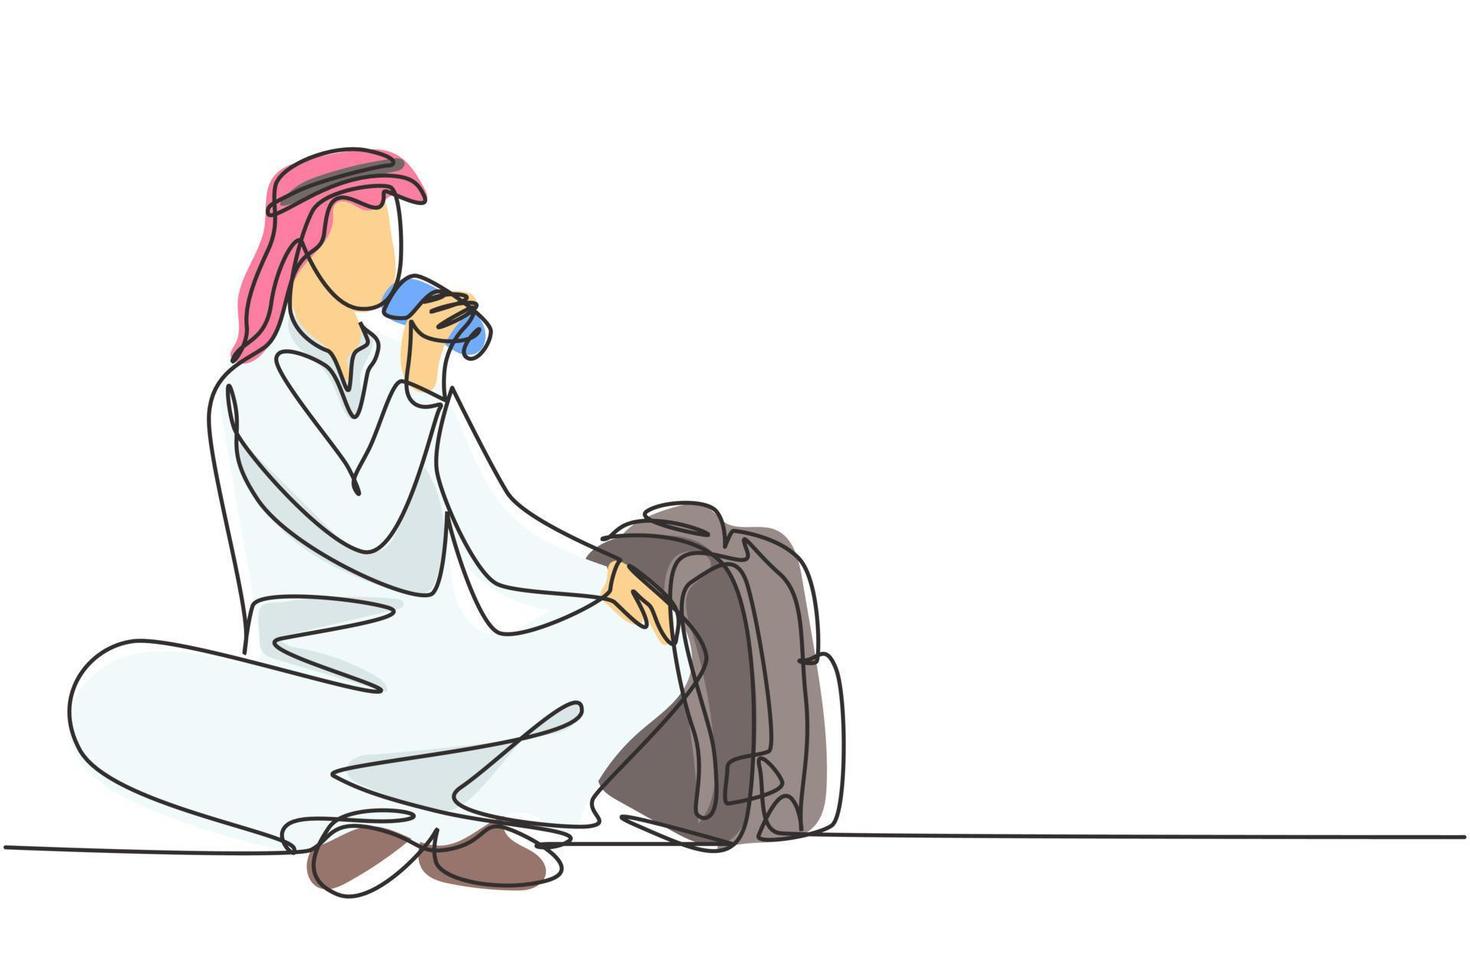 singolo disegno a tratteggio giovane uomo arabo seduto mentre si gode una bibita per rinfrescare e rilassare il corpo. concetto di adolescente attraente. illustrazione vettoriale grafica di disegno di disegno di linea continua moderna